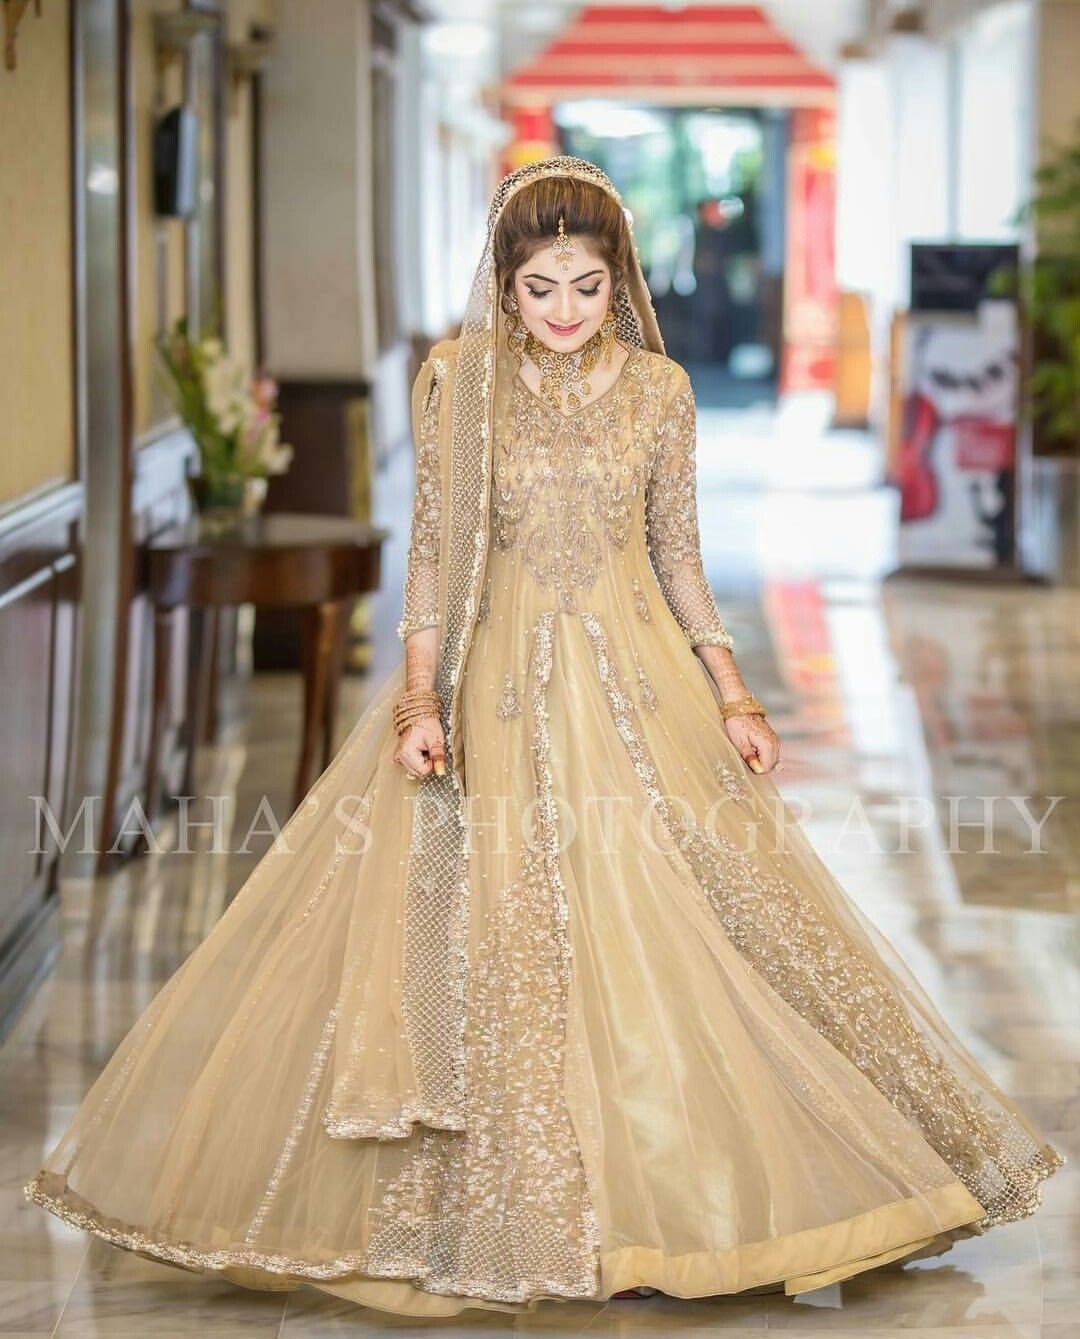 walima bridal dresses pakistani 2019